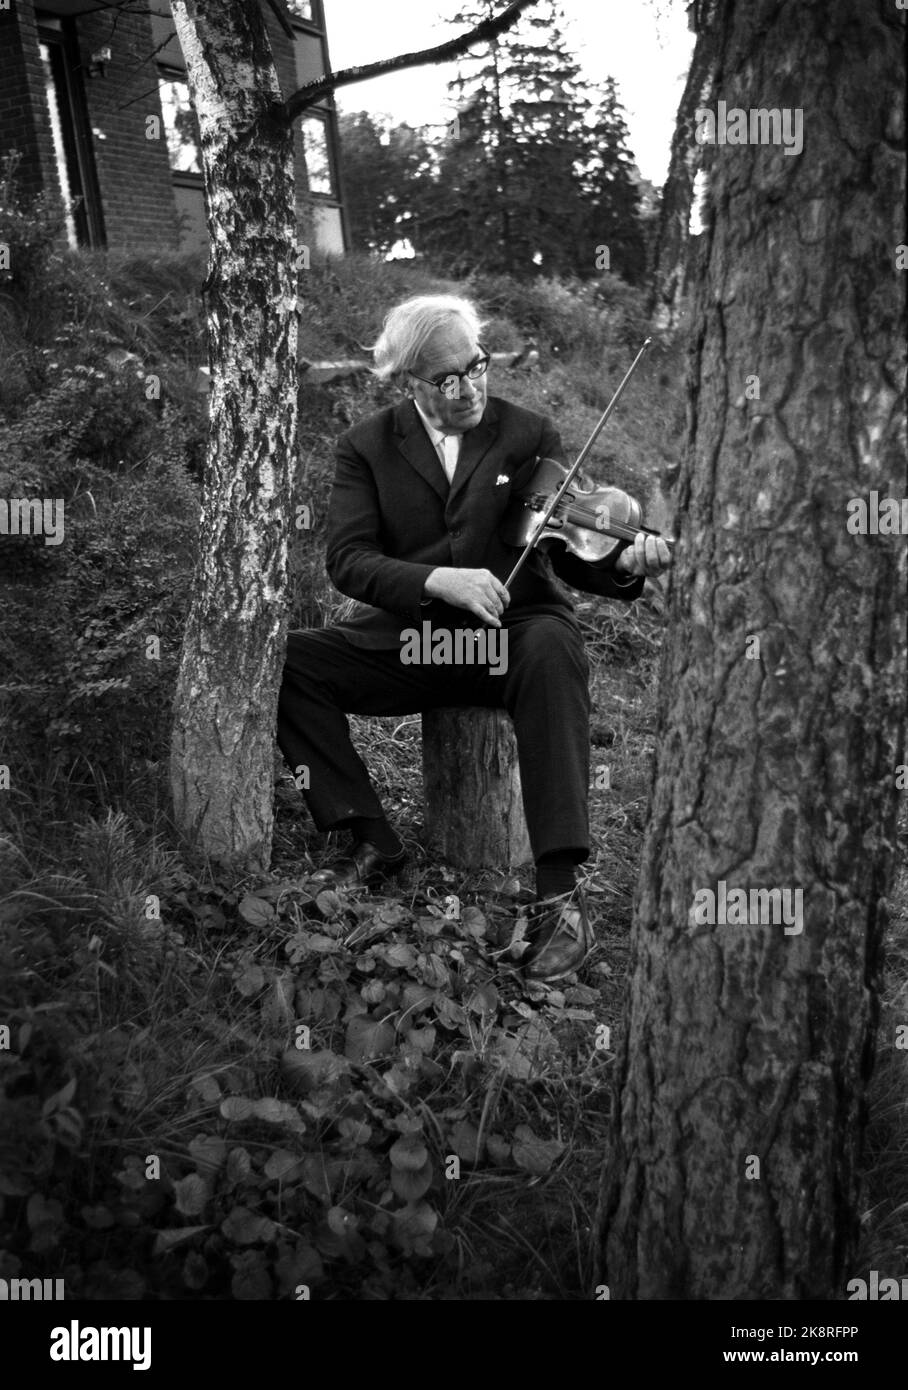 196811. L'artiste Kaare Espolin Johnson voulait devenir musicien, mais a commencé trop tard. Au lieu de cela, il dessine, mais il traite toujours à la fois le violon et le piano. Ici, nous le voyons jouer du violon. Photo: Ivar Aaserud, courant / NTB Banque D'Images